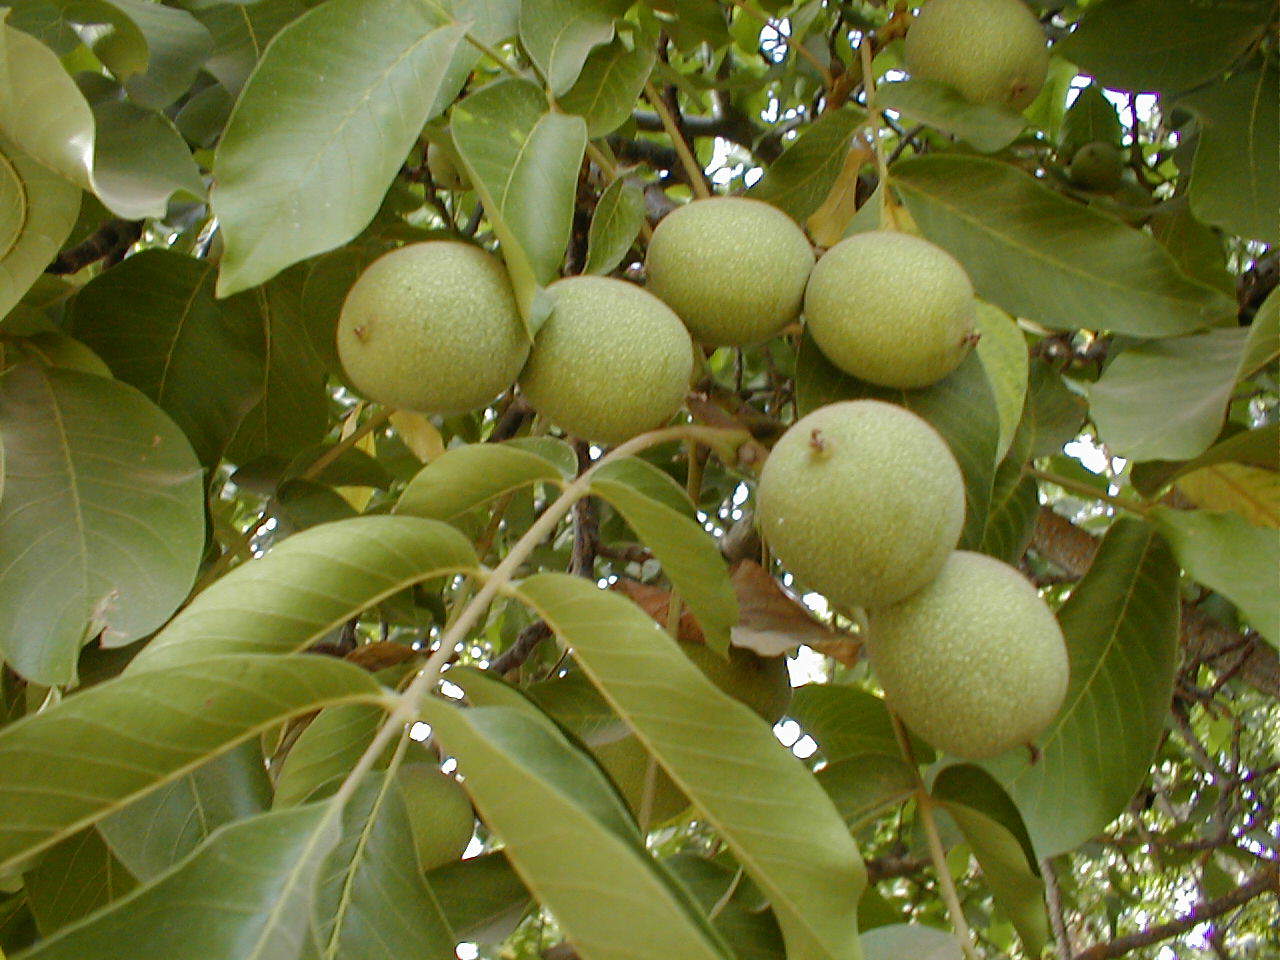 Unripe walnuts